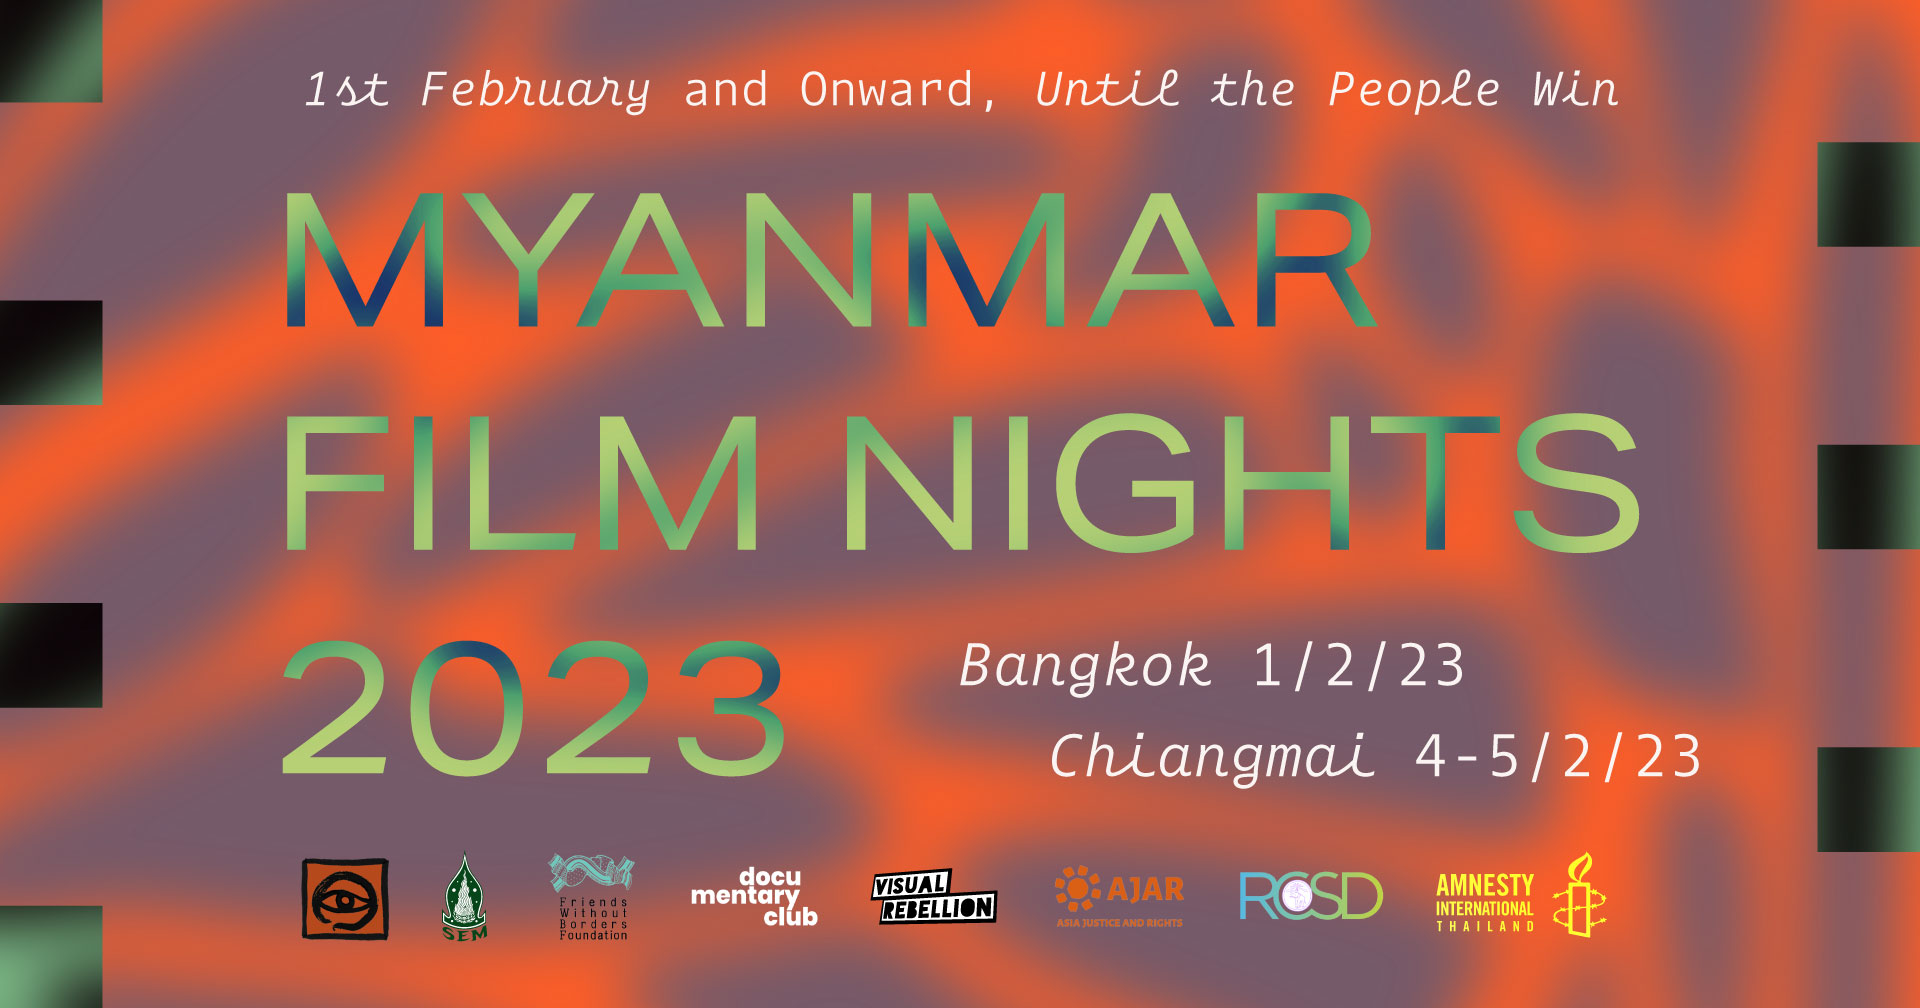 Myanmar Film Nights 2023  